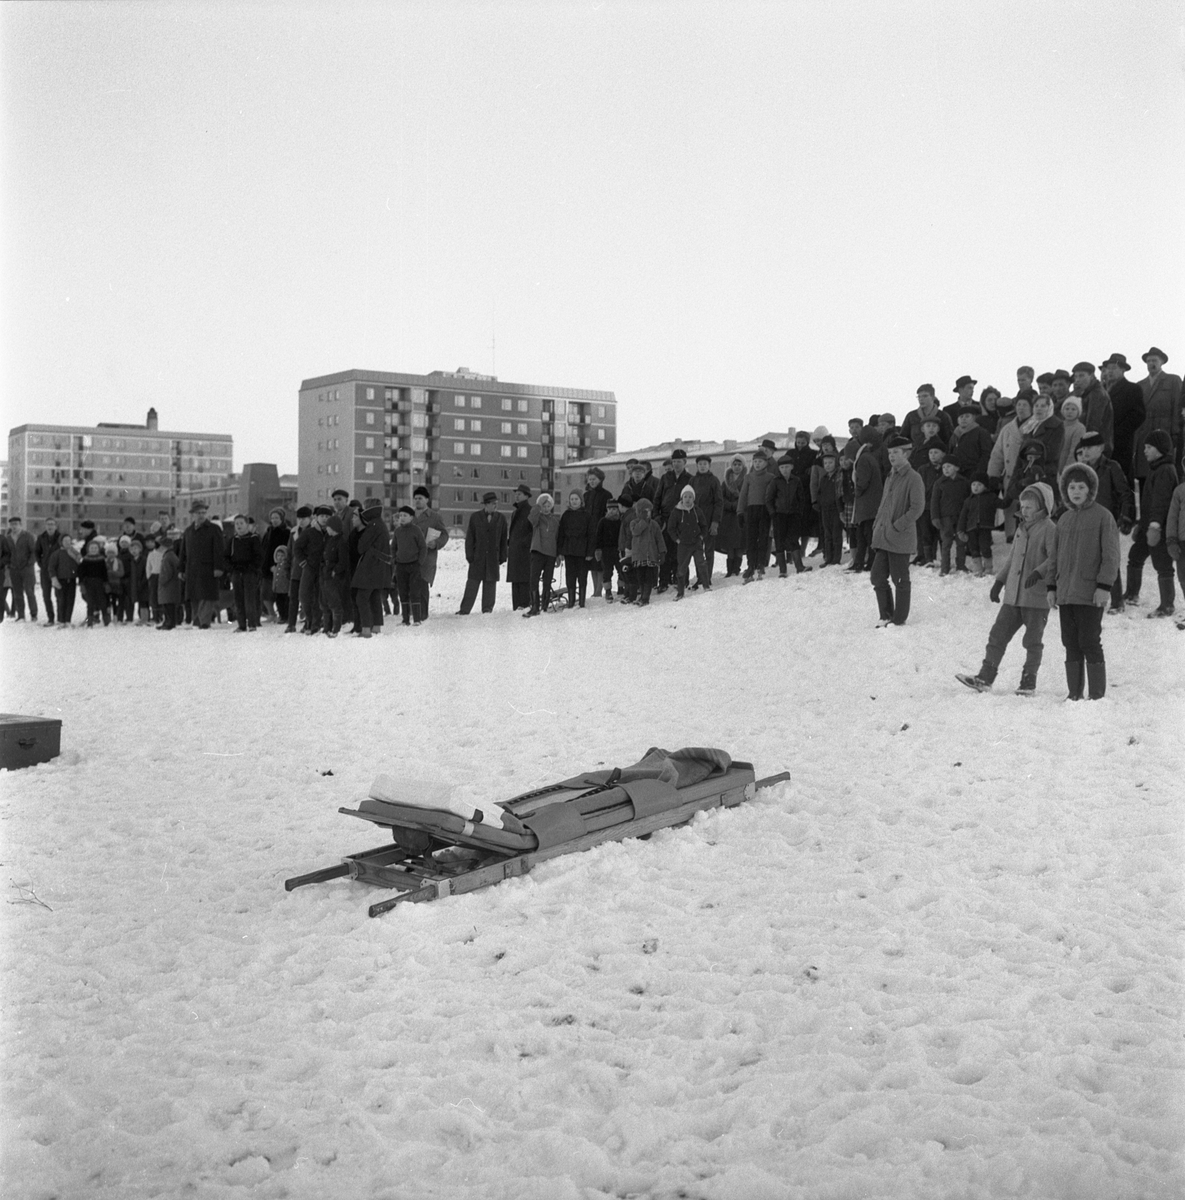 Oroliga linköpingsbor följer räddningsinsats i Stångån i höjd med stadsdelen Johannelund. Lyckligtvis kom inte räddningsbåren på bilden till användning. Under eftermiddagen framkom uppgiften att en pojke setts gående från ån med blöta kläder, och insatsen avbröts. Det hände den 14 januari 1961.